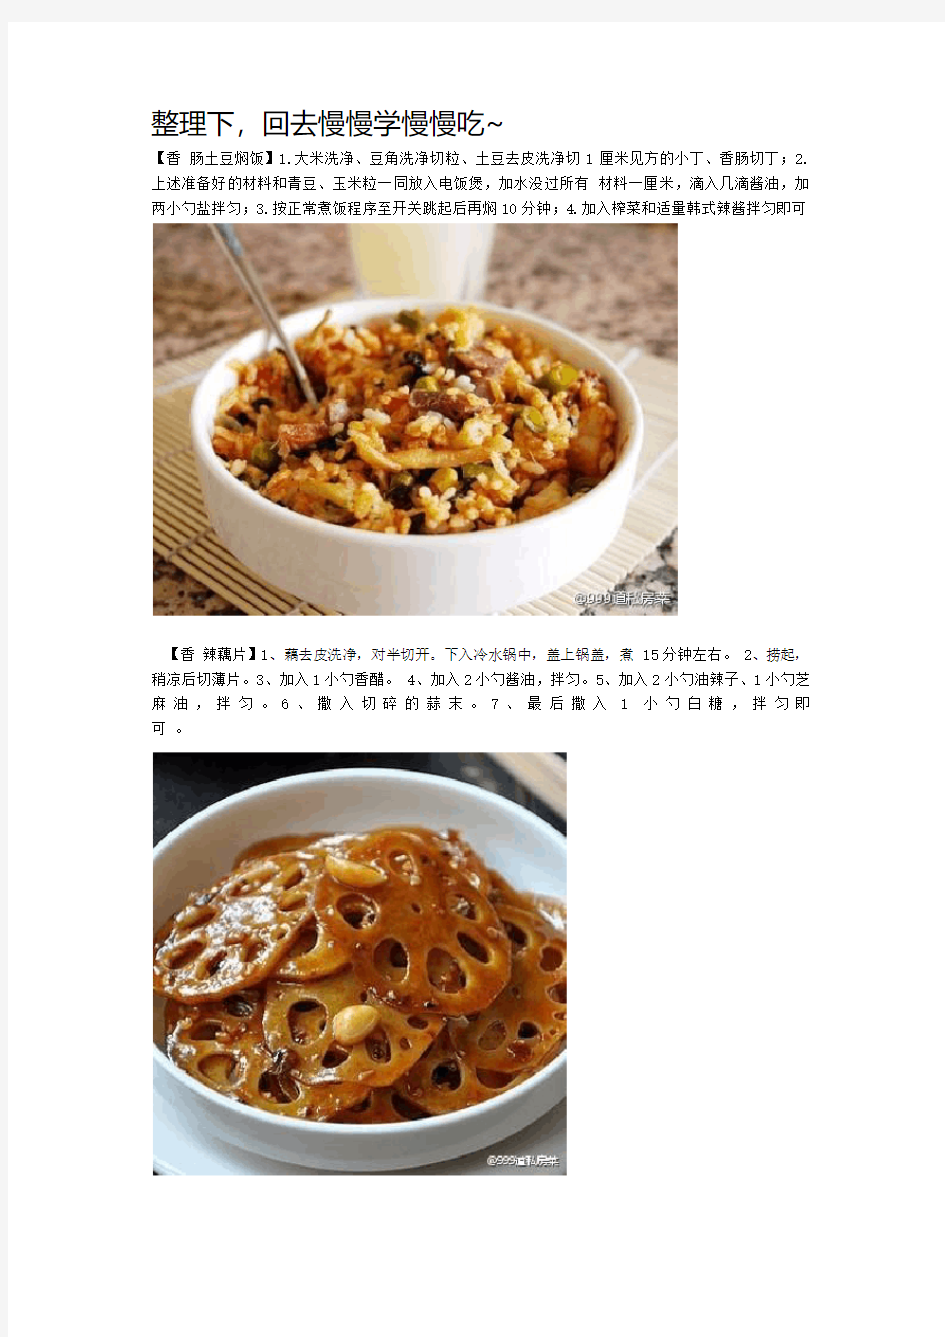 舌尖上的中国私房菜谱太好吃了特别下饭口水直流呀不收藏绝对是损失